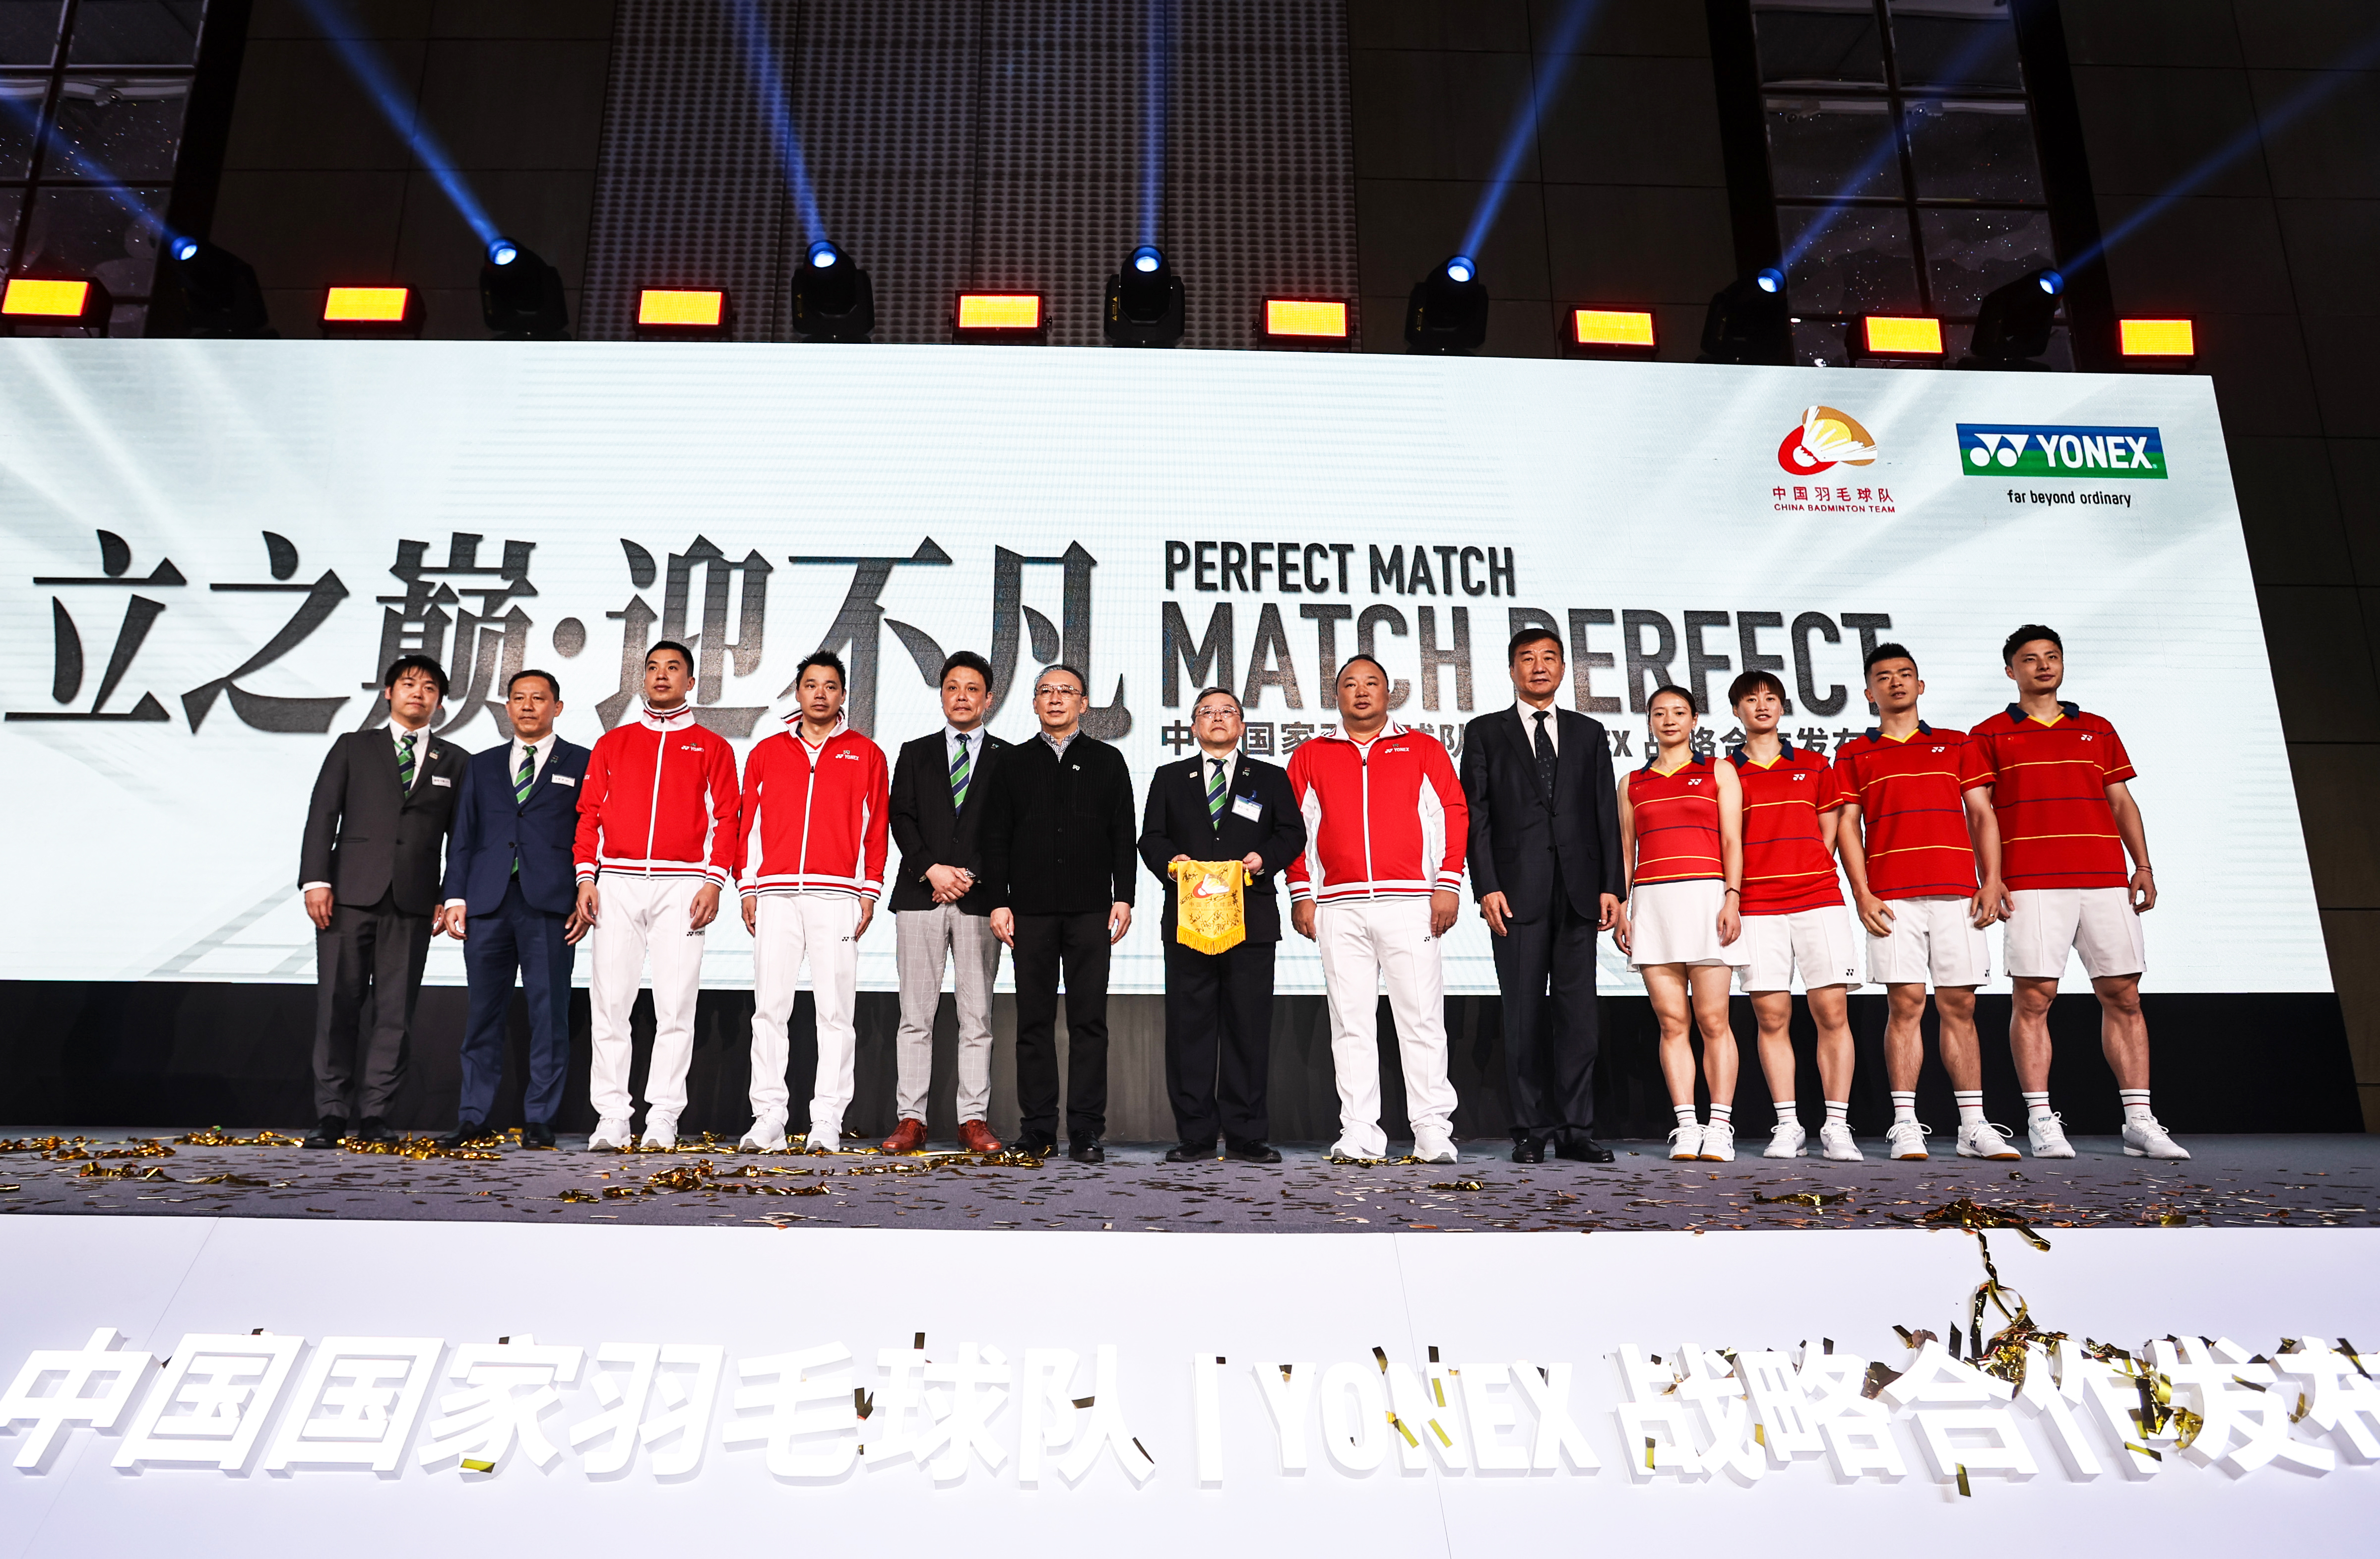 世界屈指のバドミントン強豪国 中国代表チームと用具使用契約を締結しました